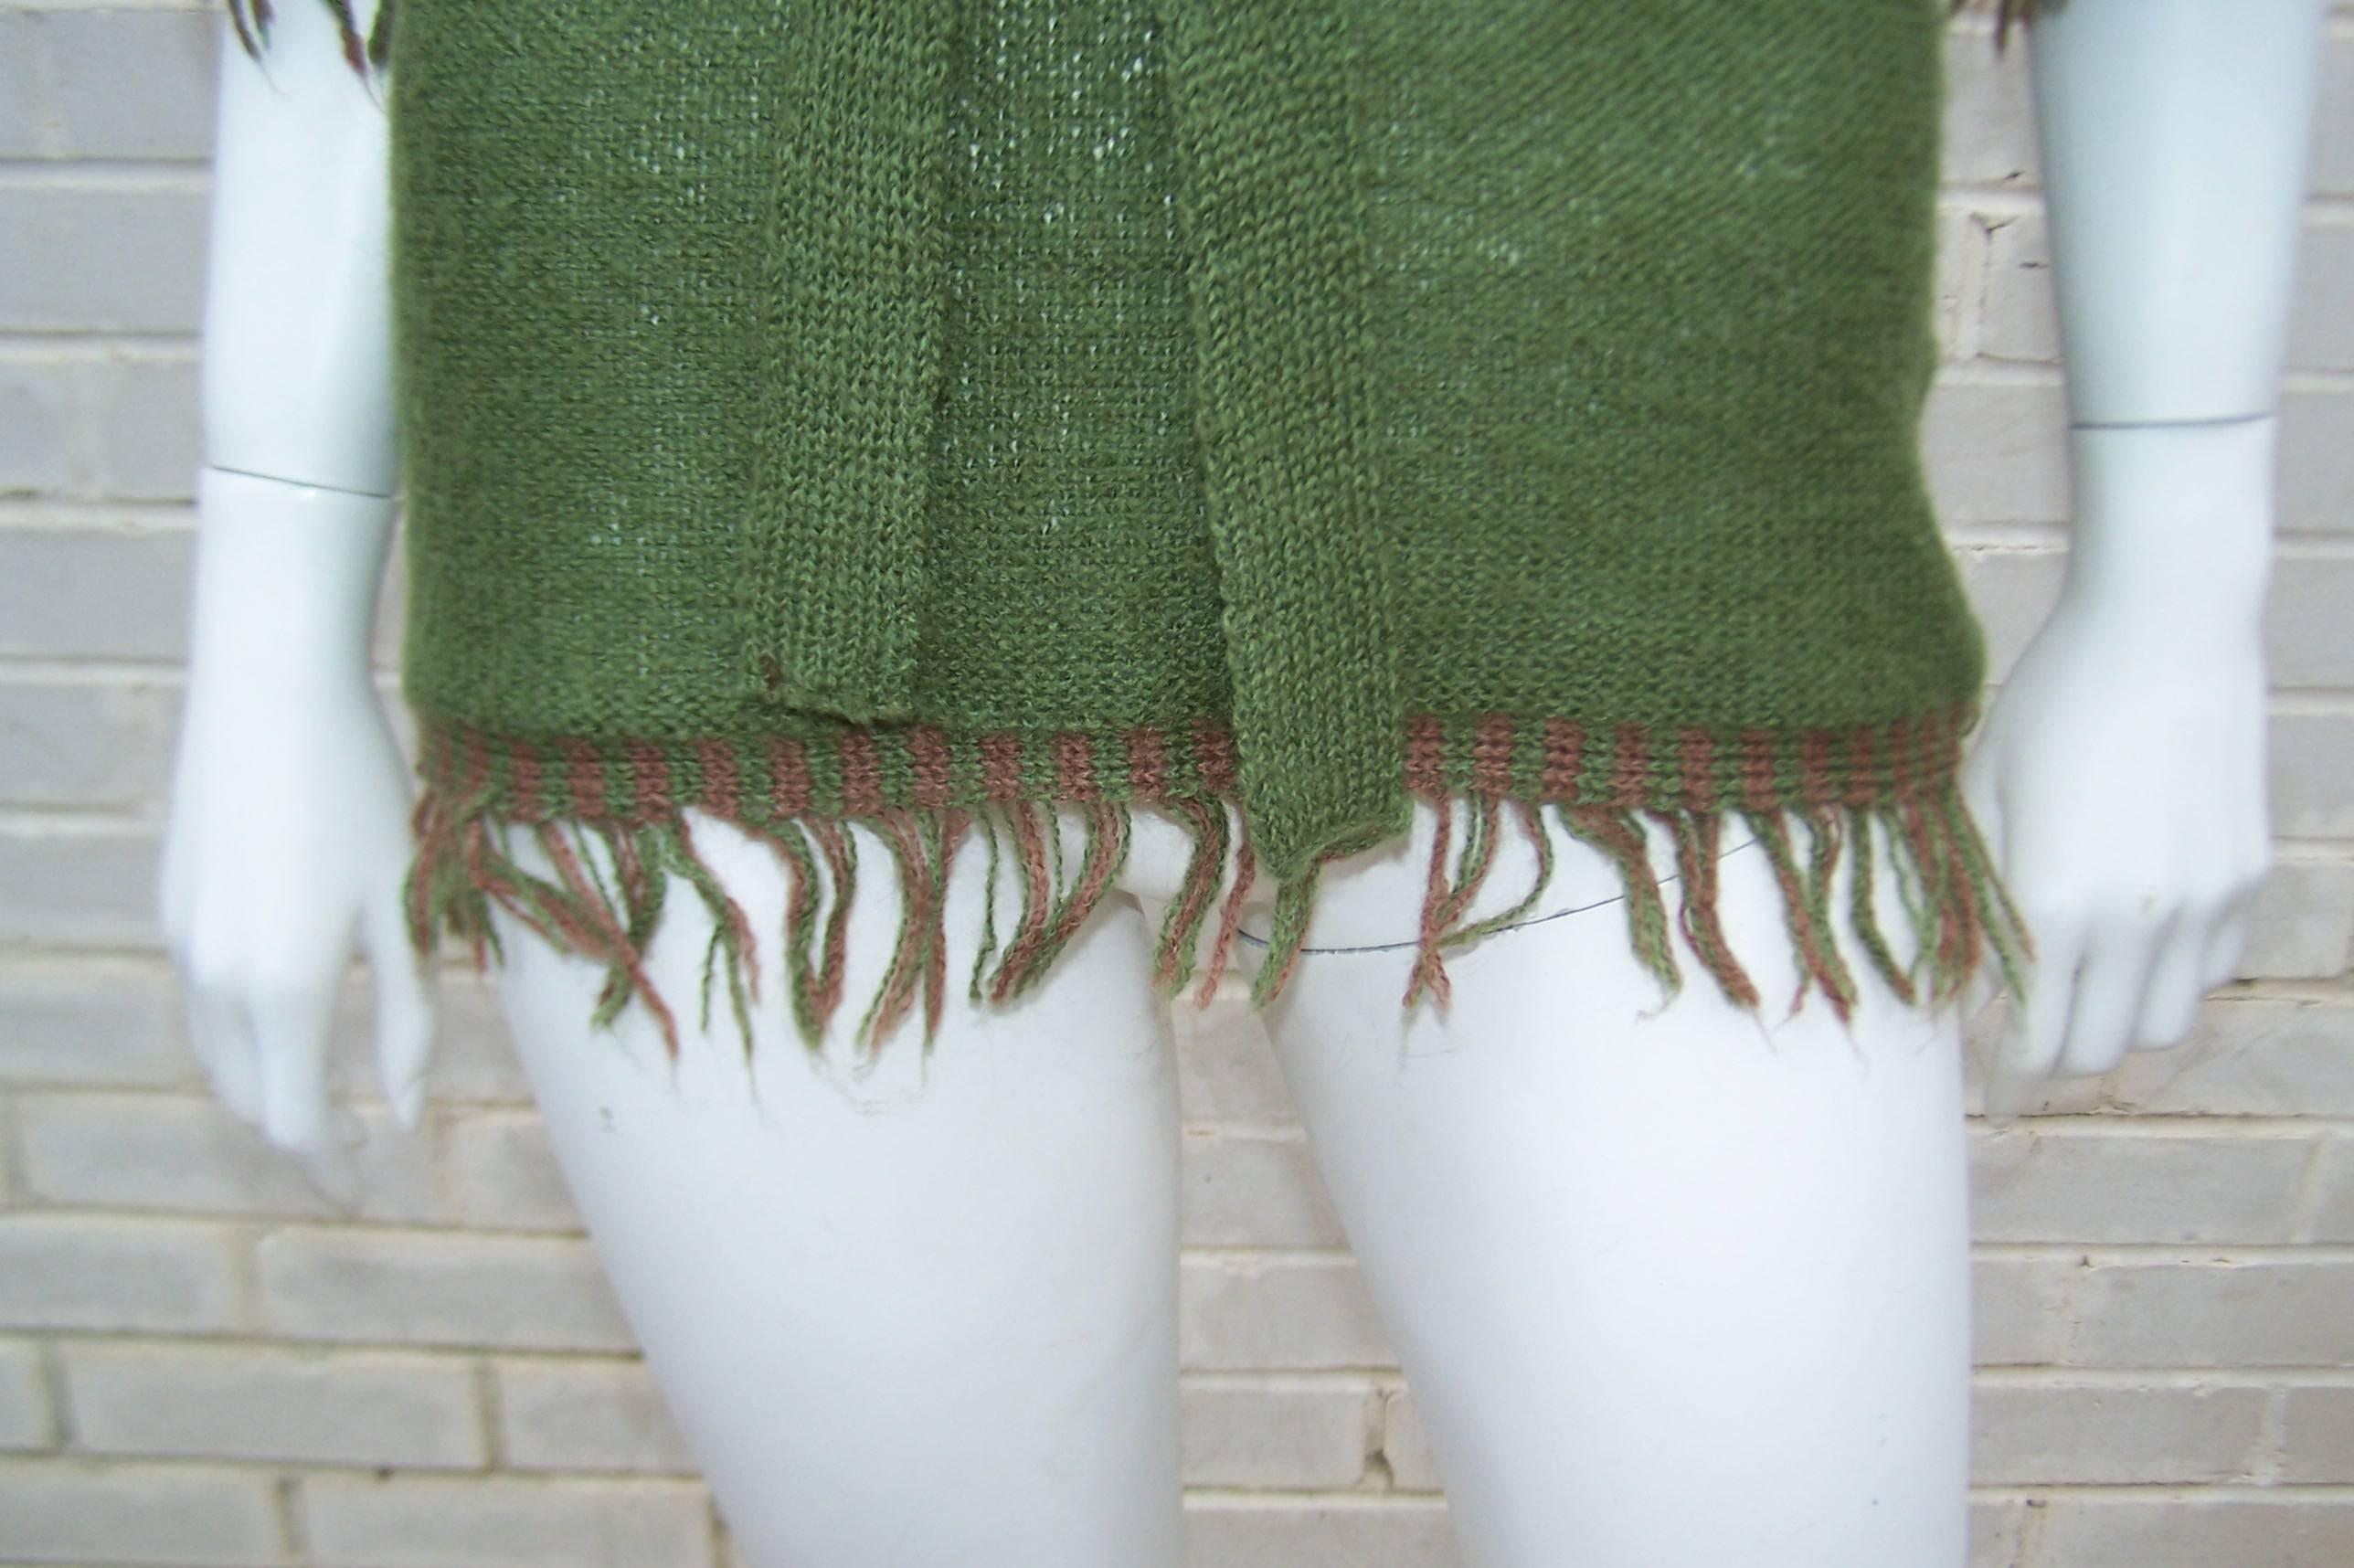 Gray C.1970 La Squadra Wool Knit Fringed Sweater Top